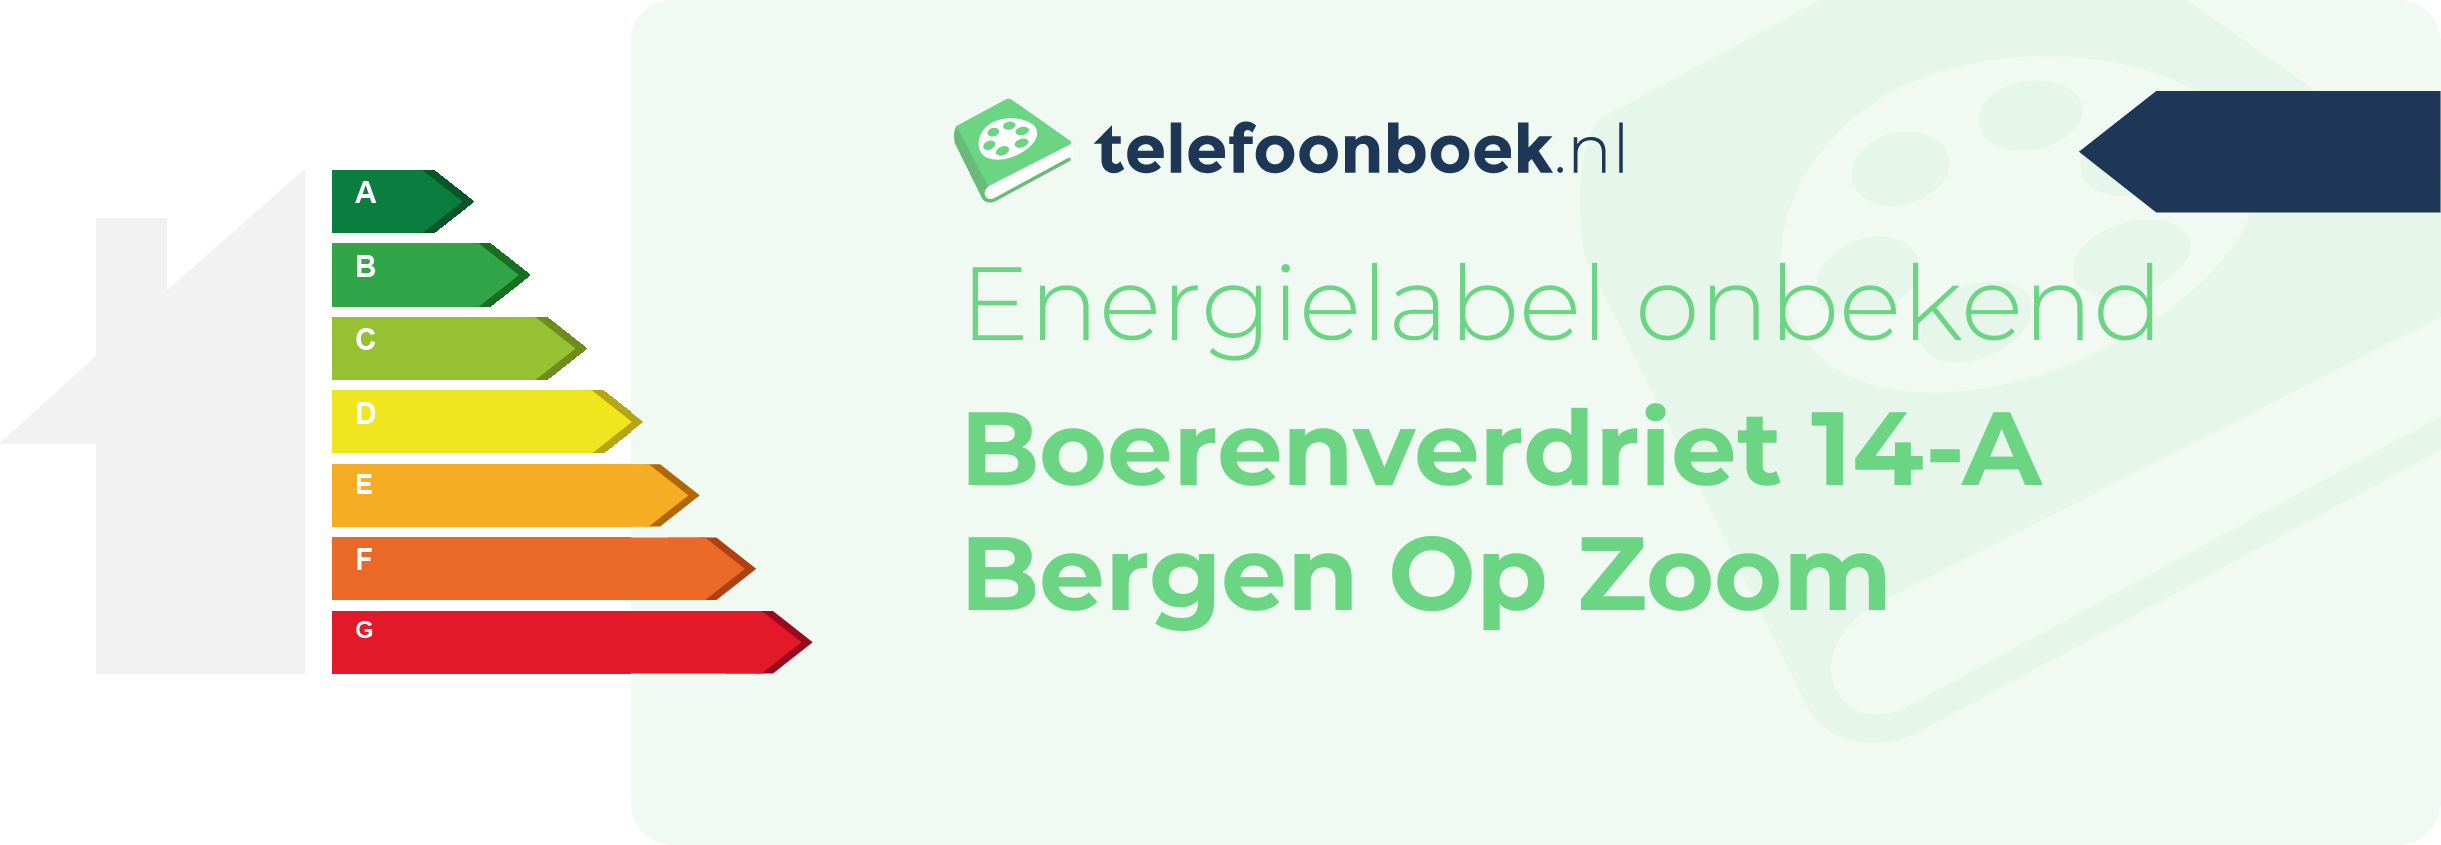 Energielabel Boerenverdriet 14-A Bergen Op Zoom